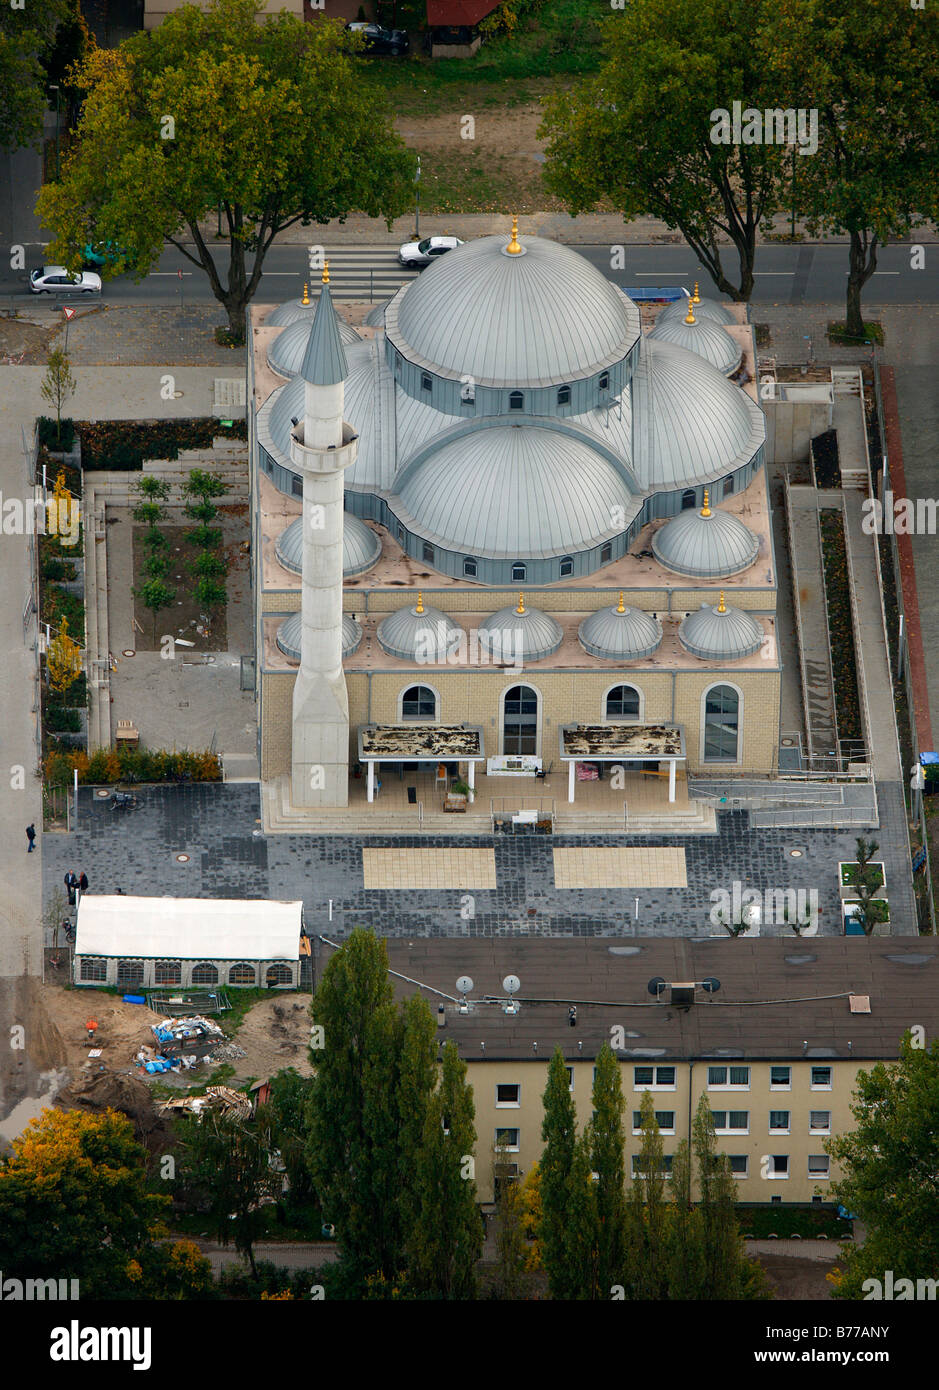 Photographie aérienne, la Mosquée Merkez, nouveau bâtiment, Duisburg-Marxloh, Ruhr, Nordrhein-Westfalen, Germany, Europe Banque D'Images